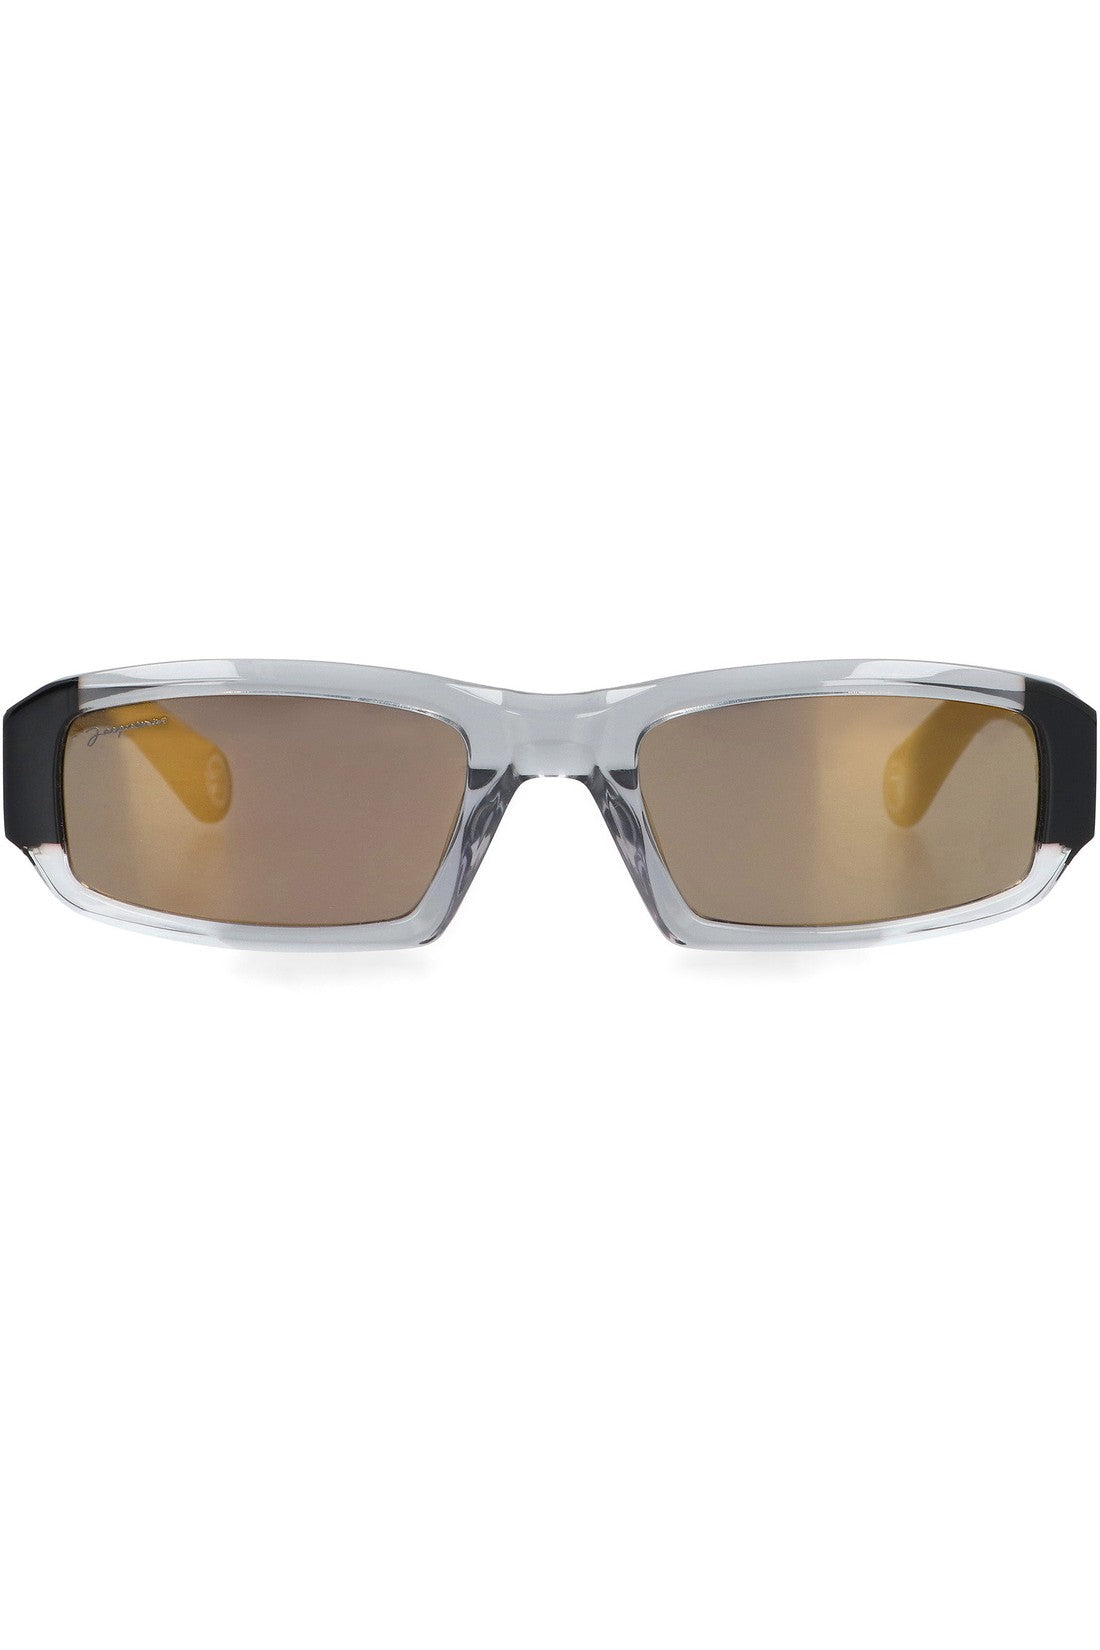 Jacquemus-OUTLET-SALE-Altù Rectangular frame sunglasses-ARCHIVIST